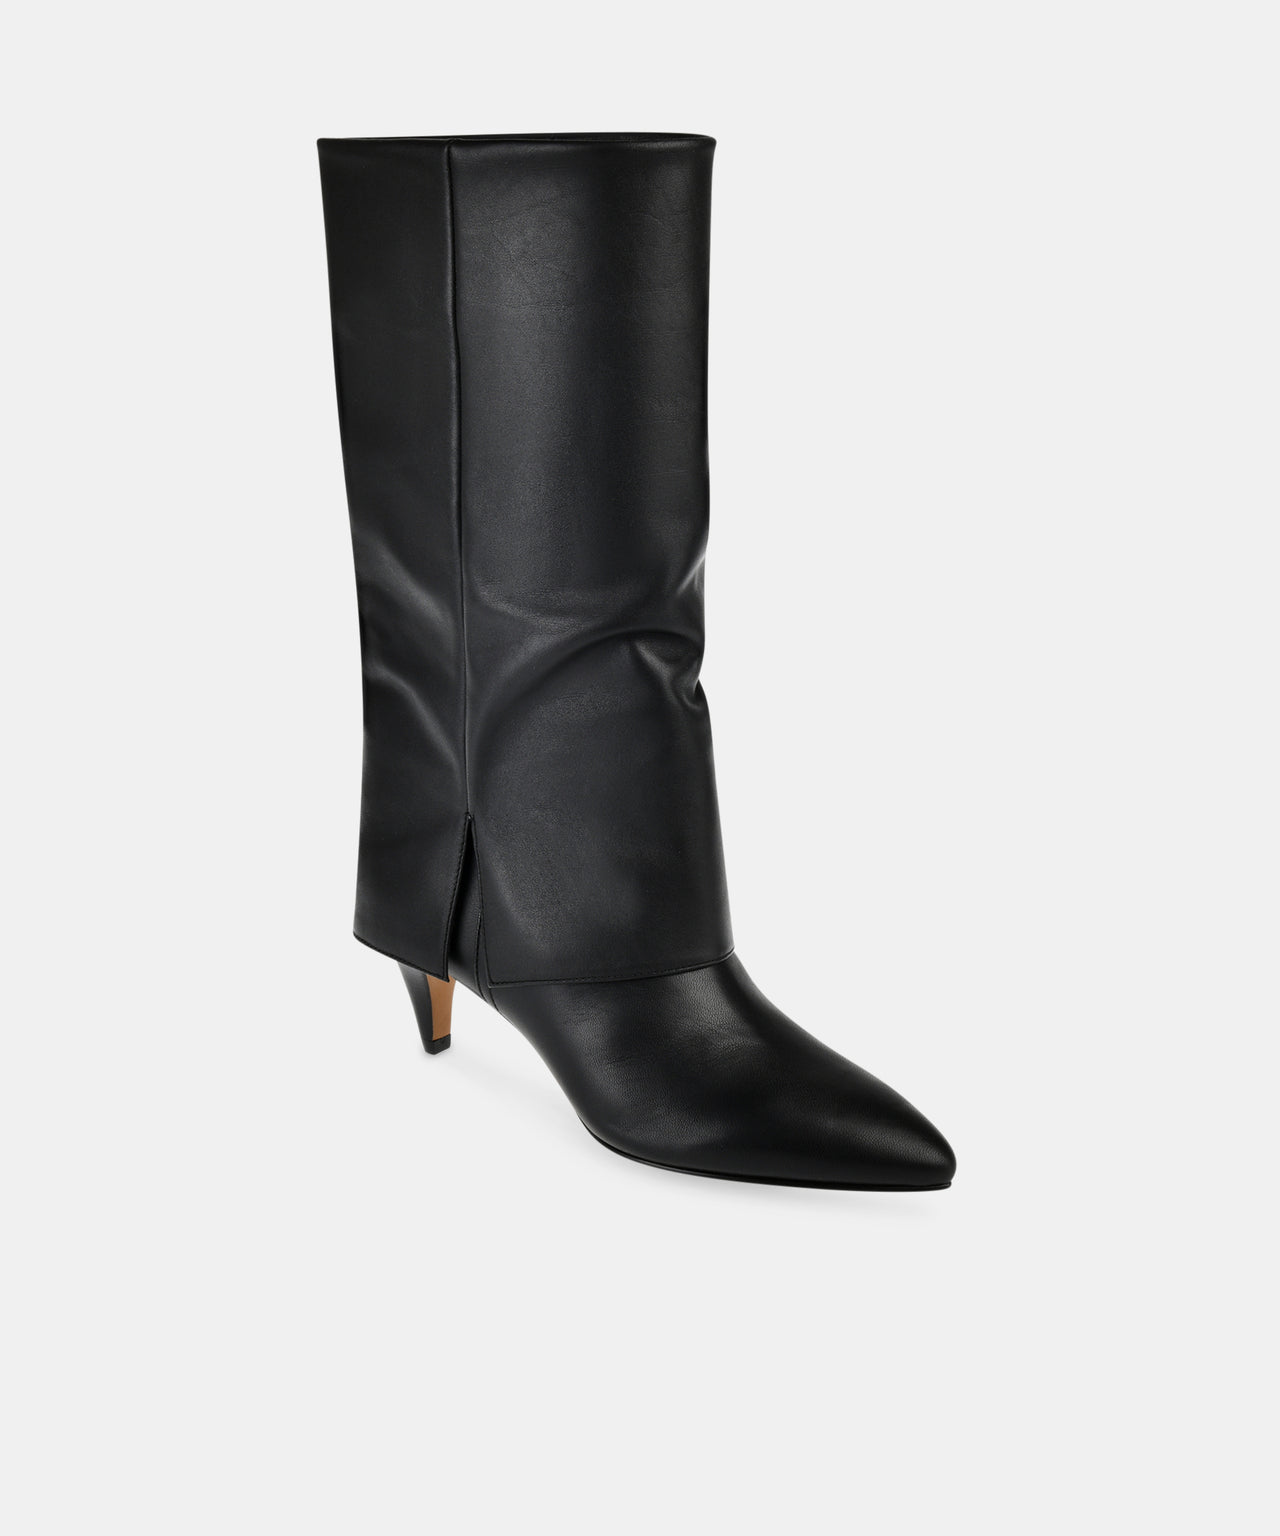 Dionne Black Boots, Shoes by Dolce Vita | LIT Boutique